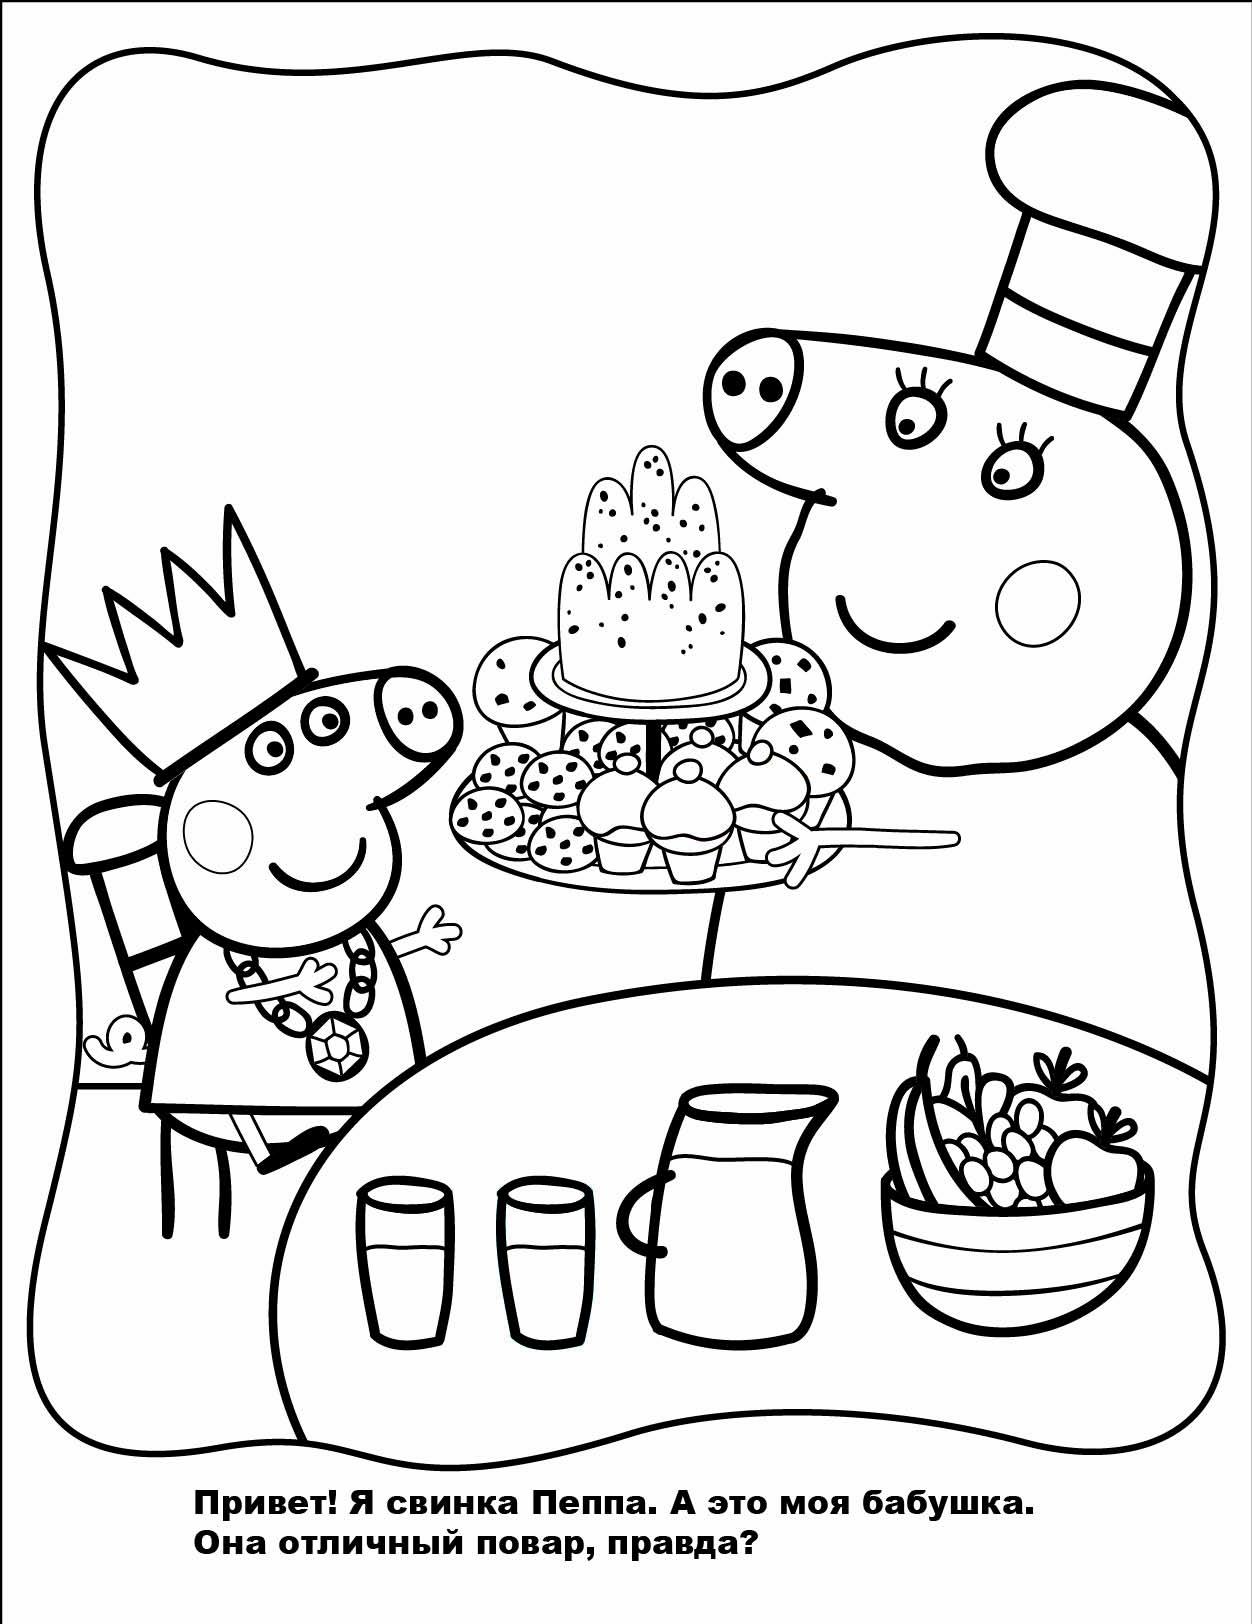 Познавательные и забавные раскраски для детей про свинку Пеппу  Свинка Пеппа и ее бабушка повар